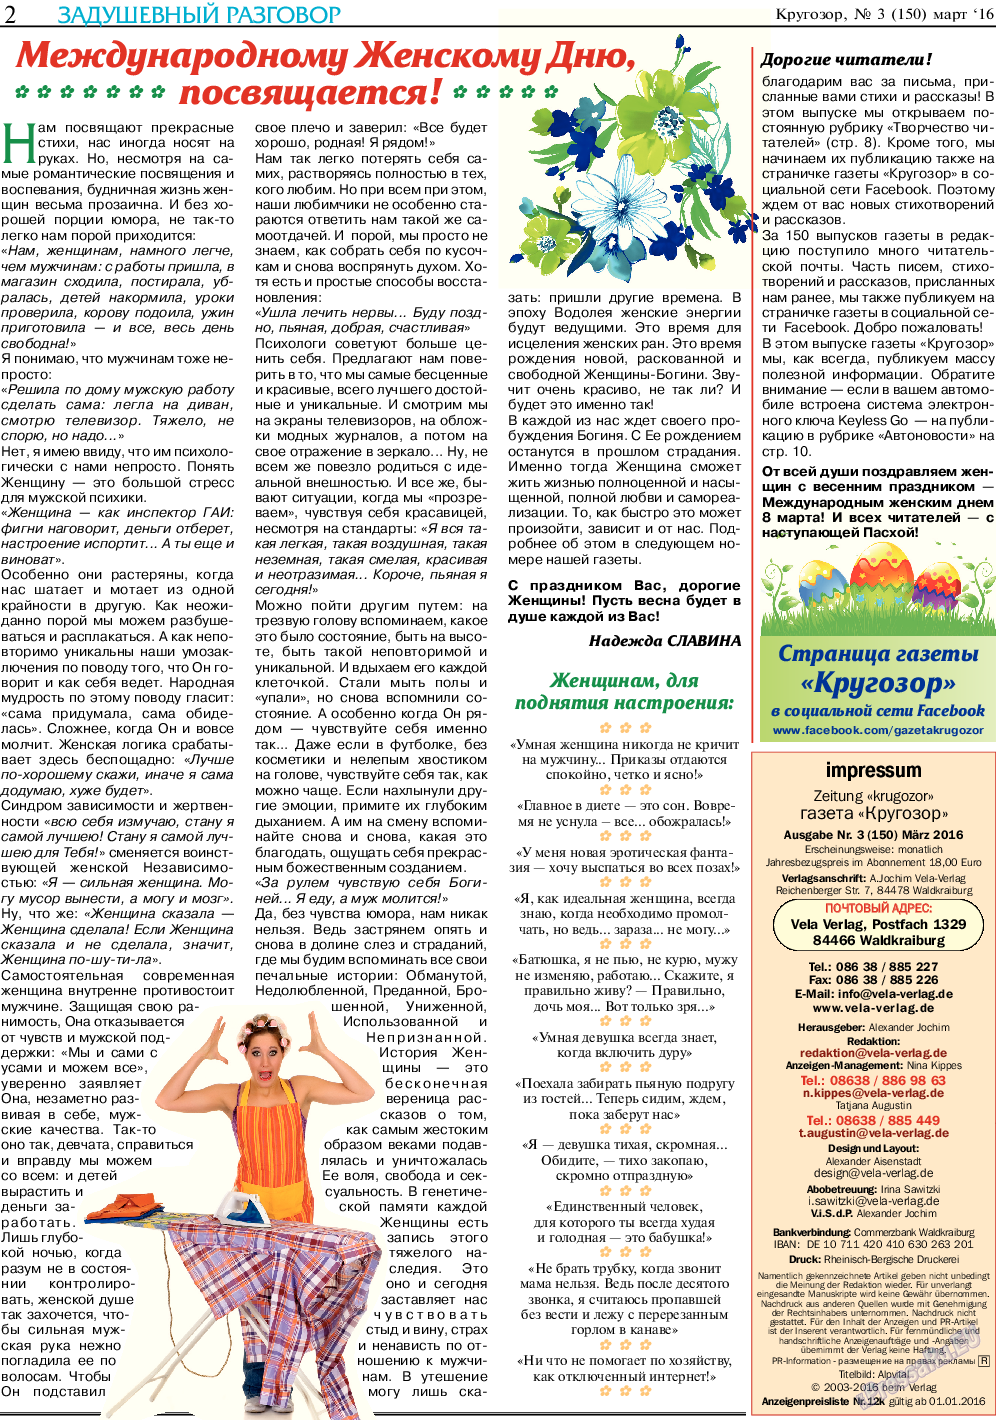 Кругозор, газета. 2016 №3 стр.2